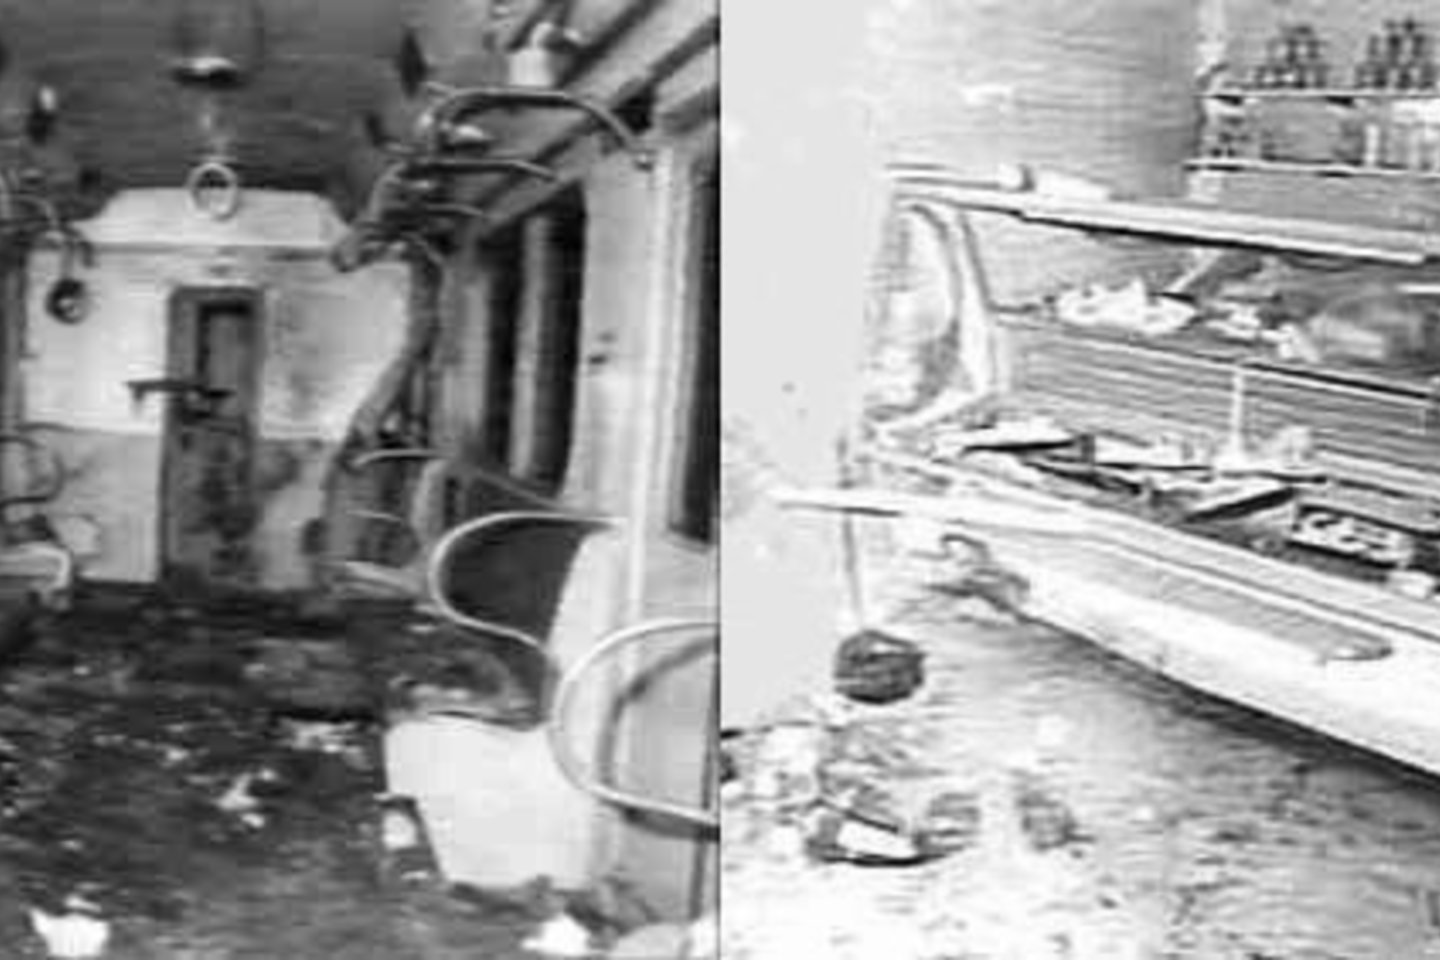  Maskvoje lygiai prieš 45 metus įvykdyta sprogdinimų serija, nusinešusi 7 gyvybes. <br>wikipedia nuotr.